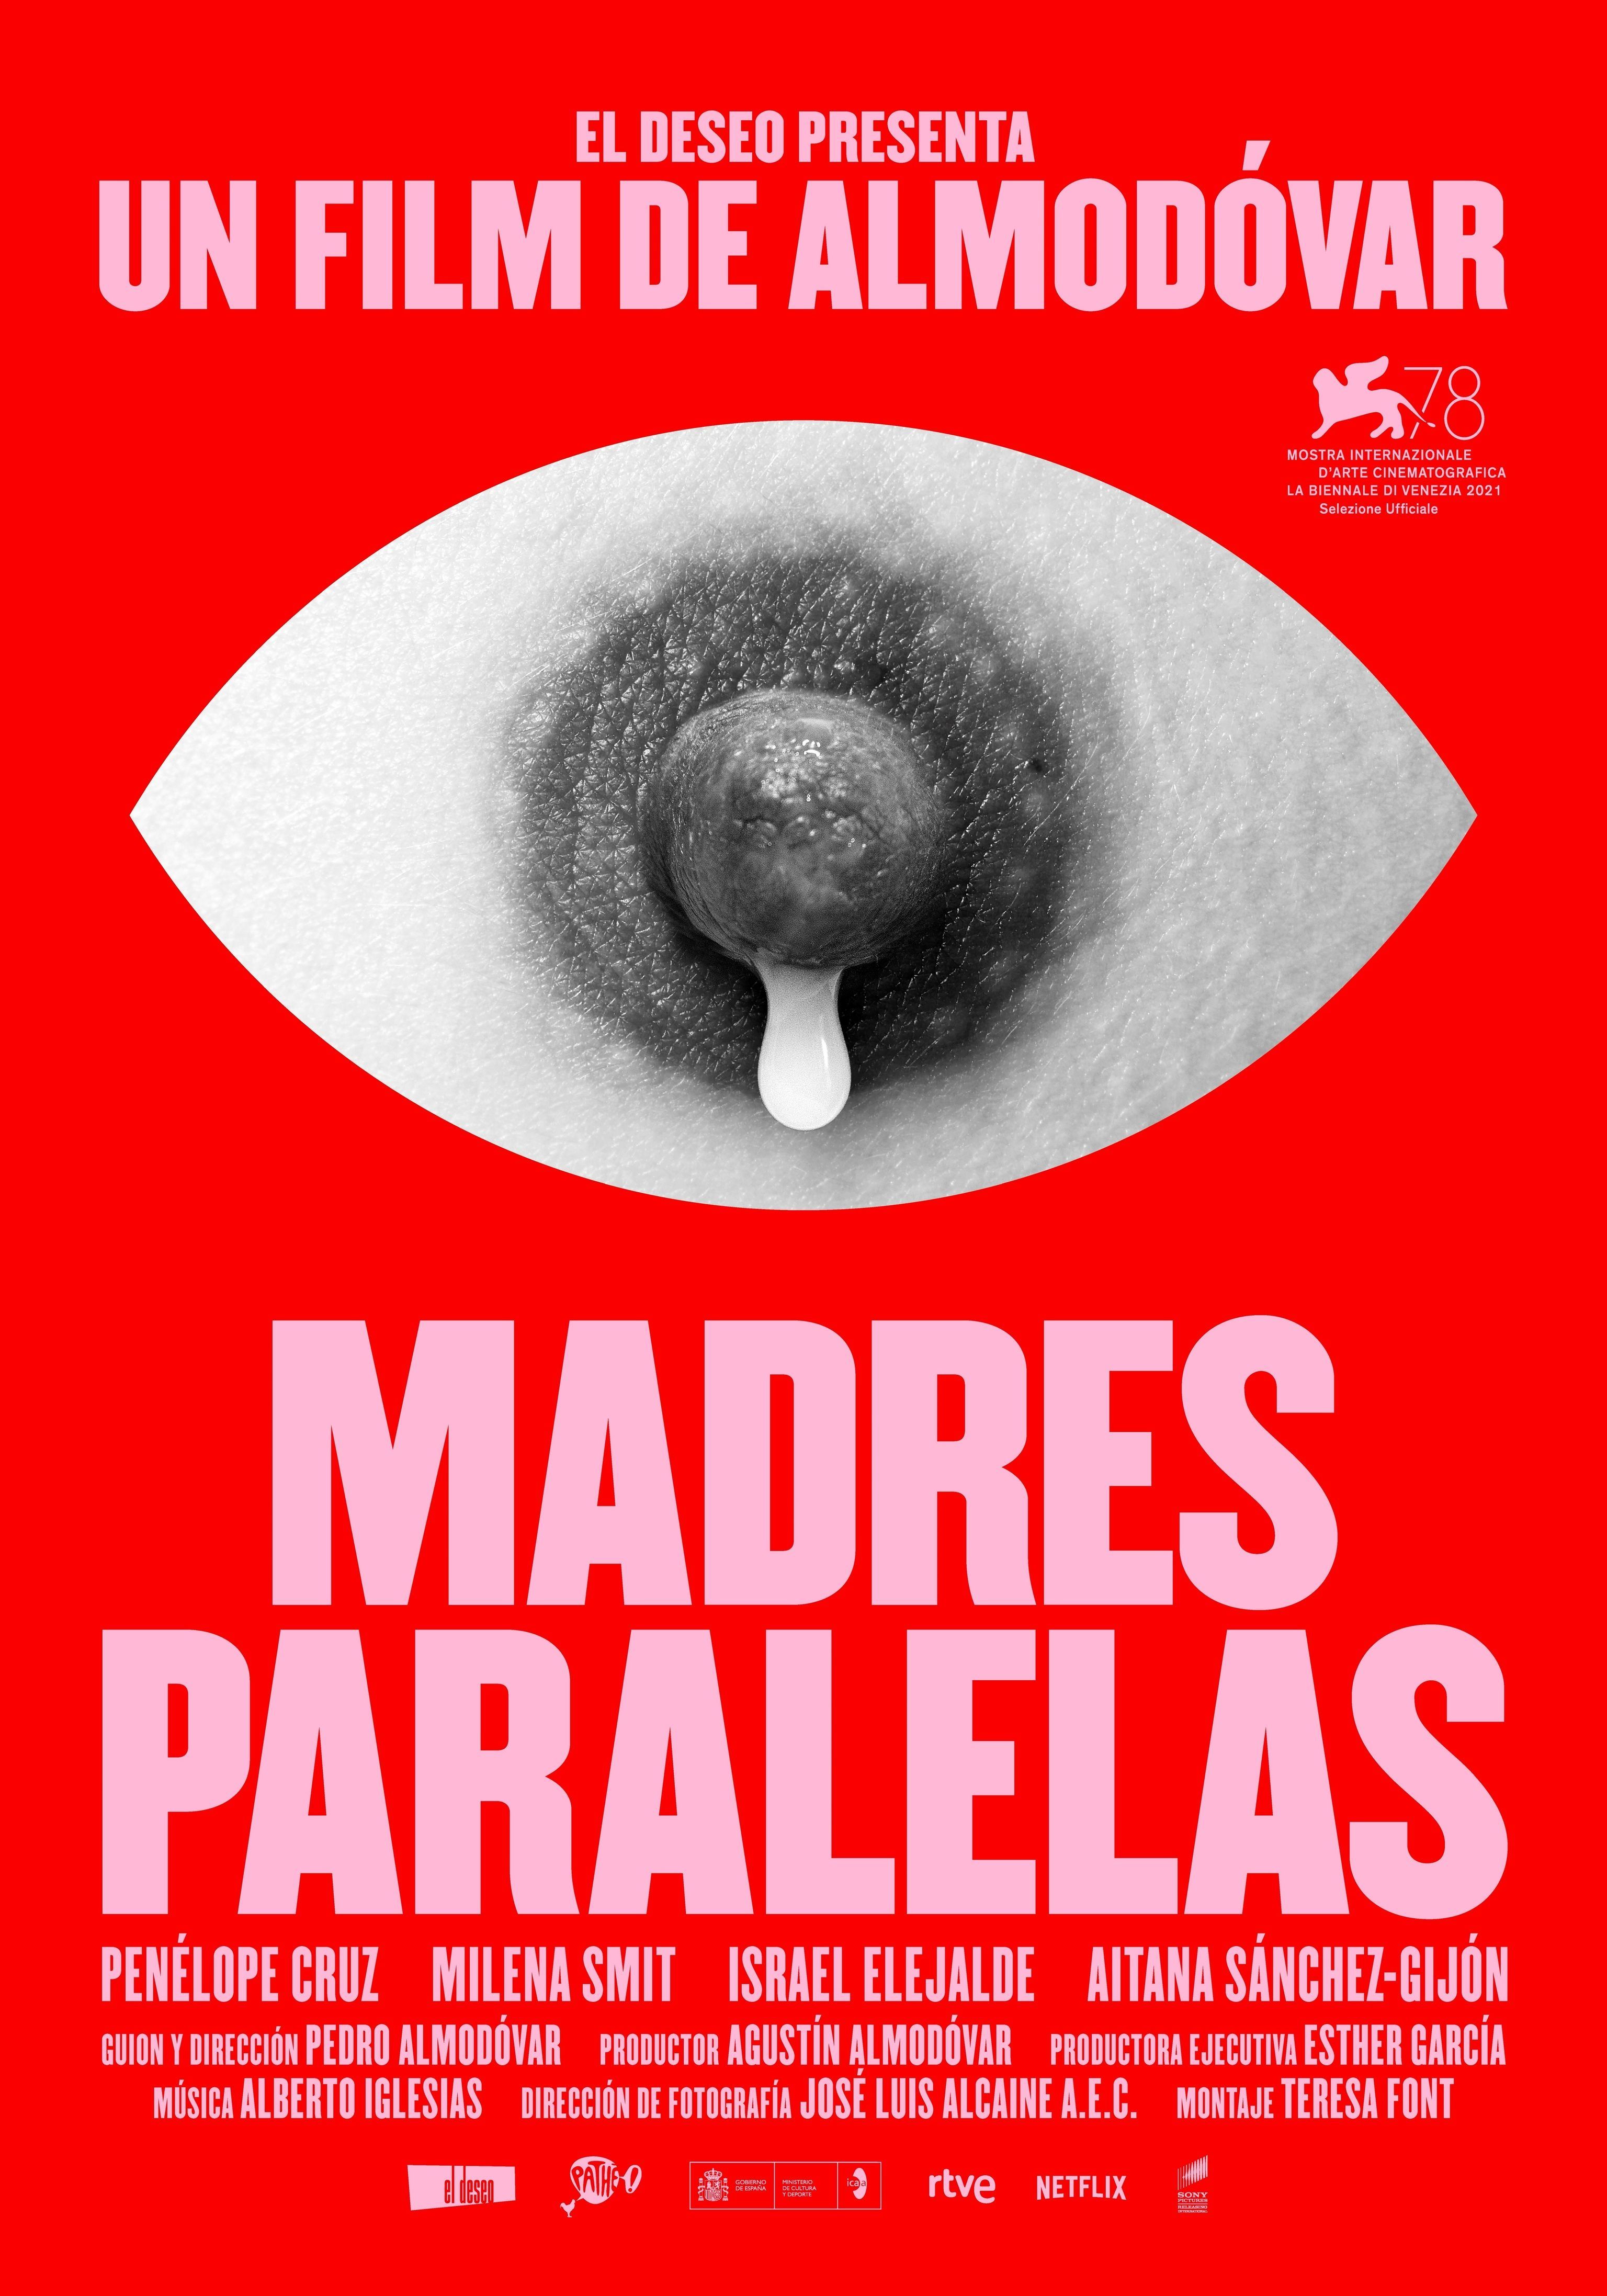 'The french dispatch' i 'Madres paralelas', del 4 al 7 de novembre en el Teatre Espanya